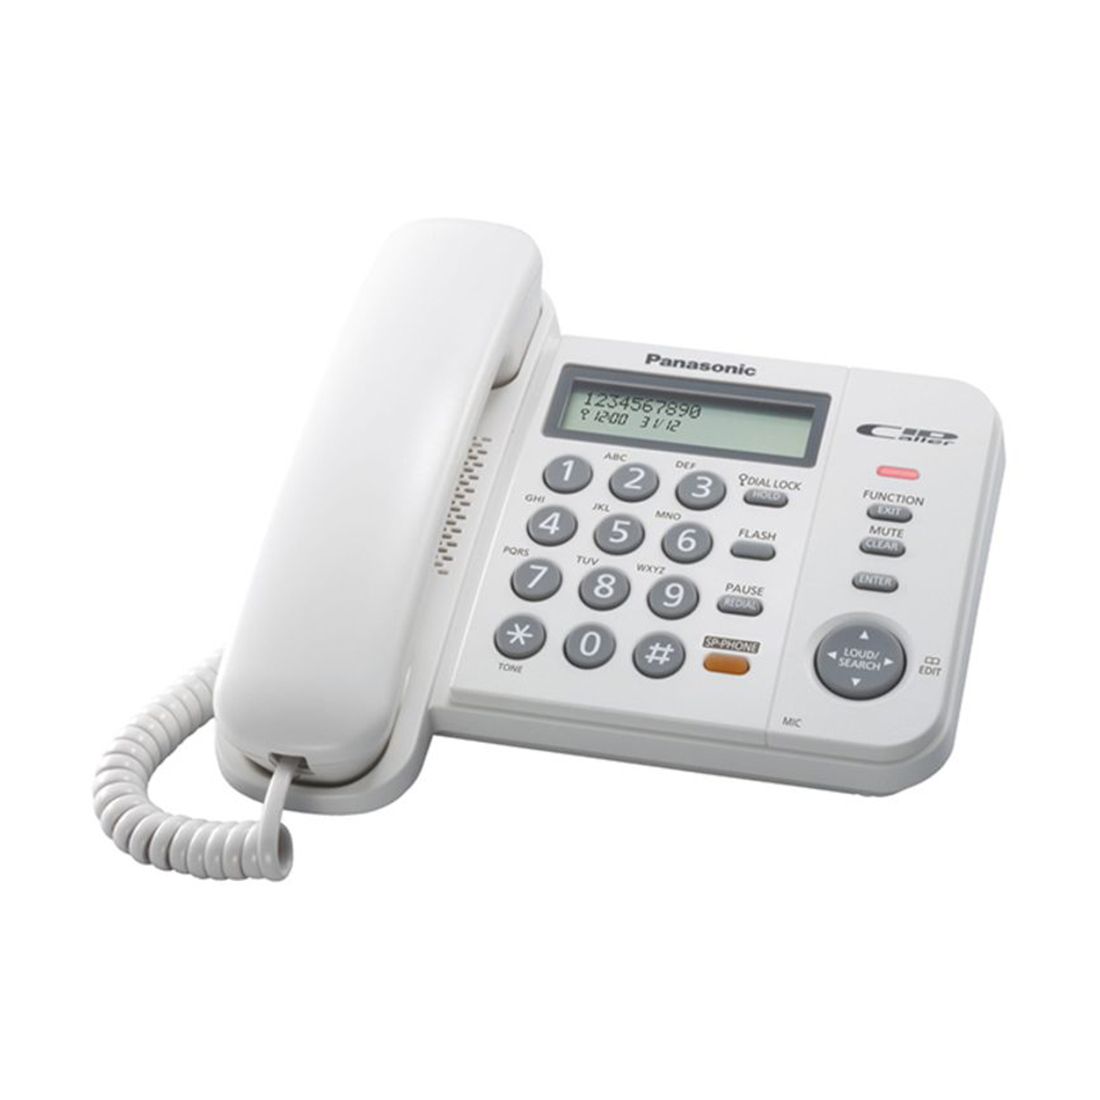 تليفون أرضي سلكي باناسونيك، ذاكرة اتصال 50 رقم، شاشة LCD، إظهار هوية المتصل، أبيض، KX-TS580FXW